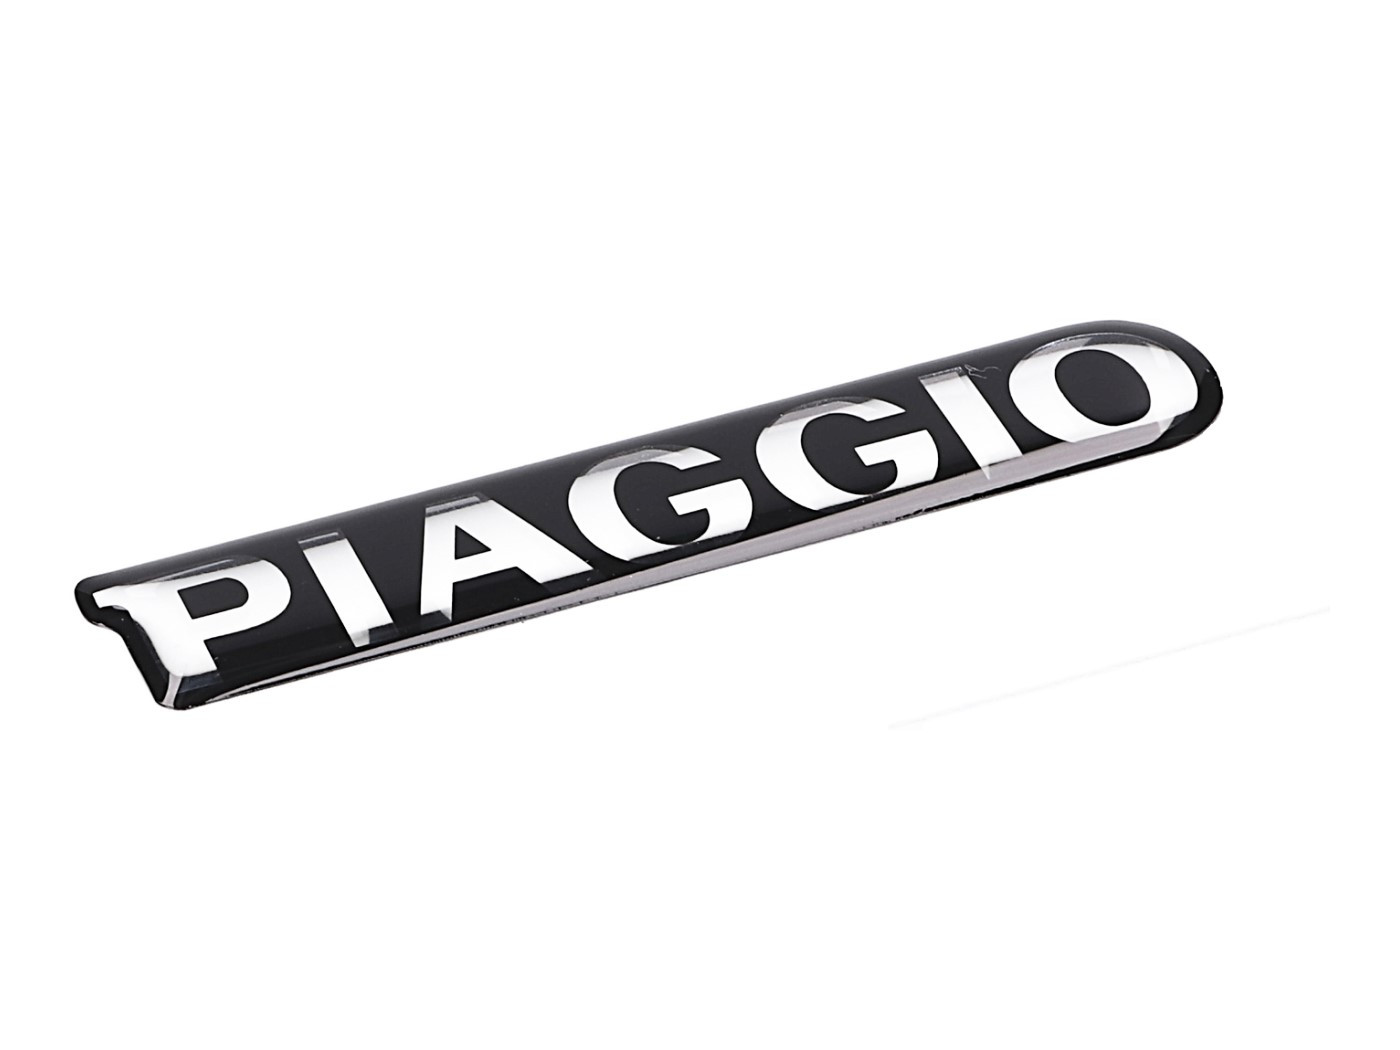 Piaggio" felirat / felirat OEM a Piaggio Zip számára"